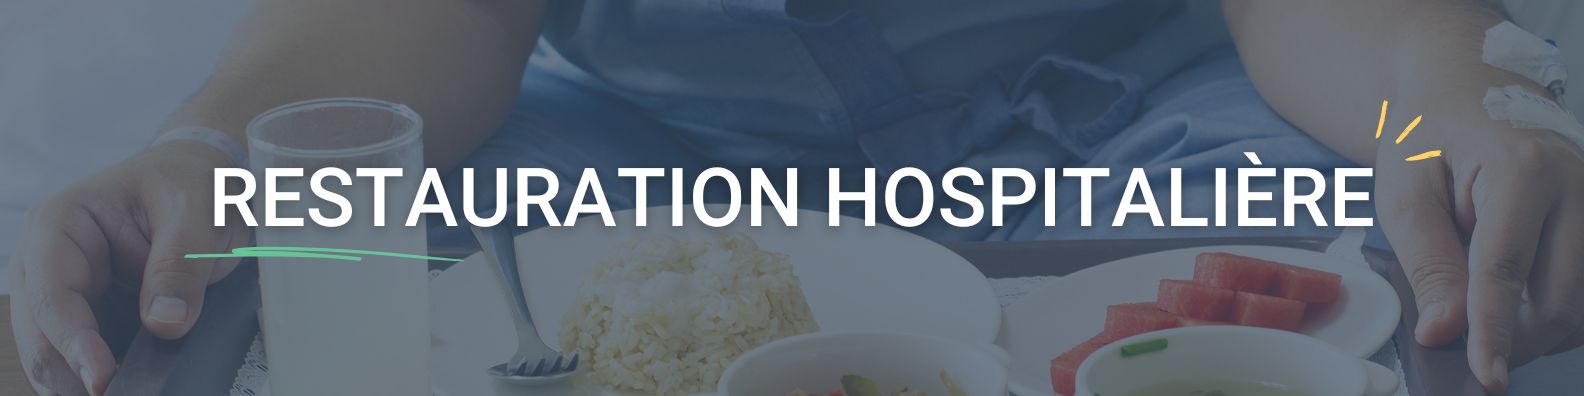 Tablette HACCP et logiciel restauration hospitalière